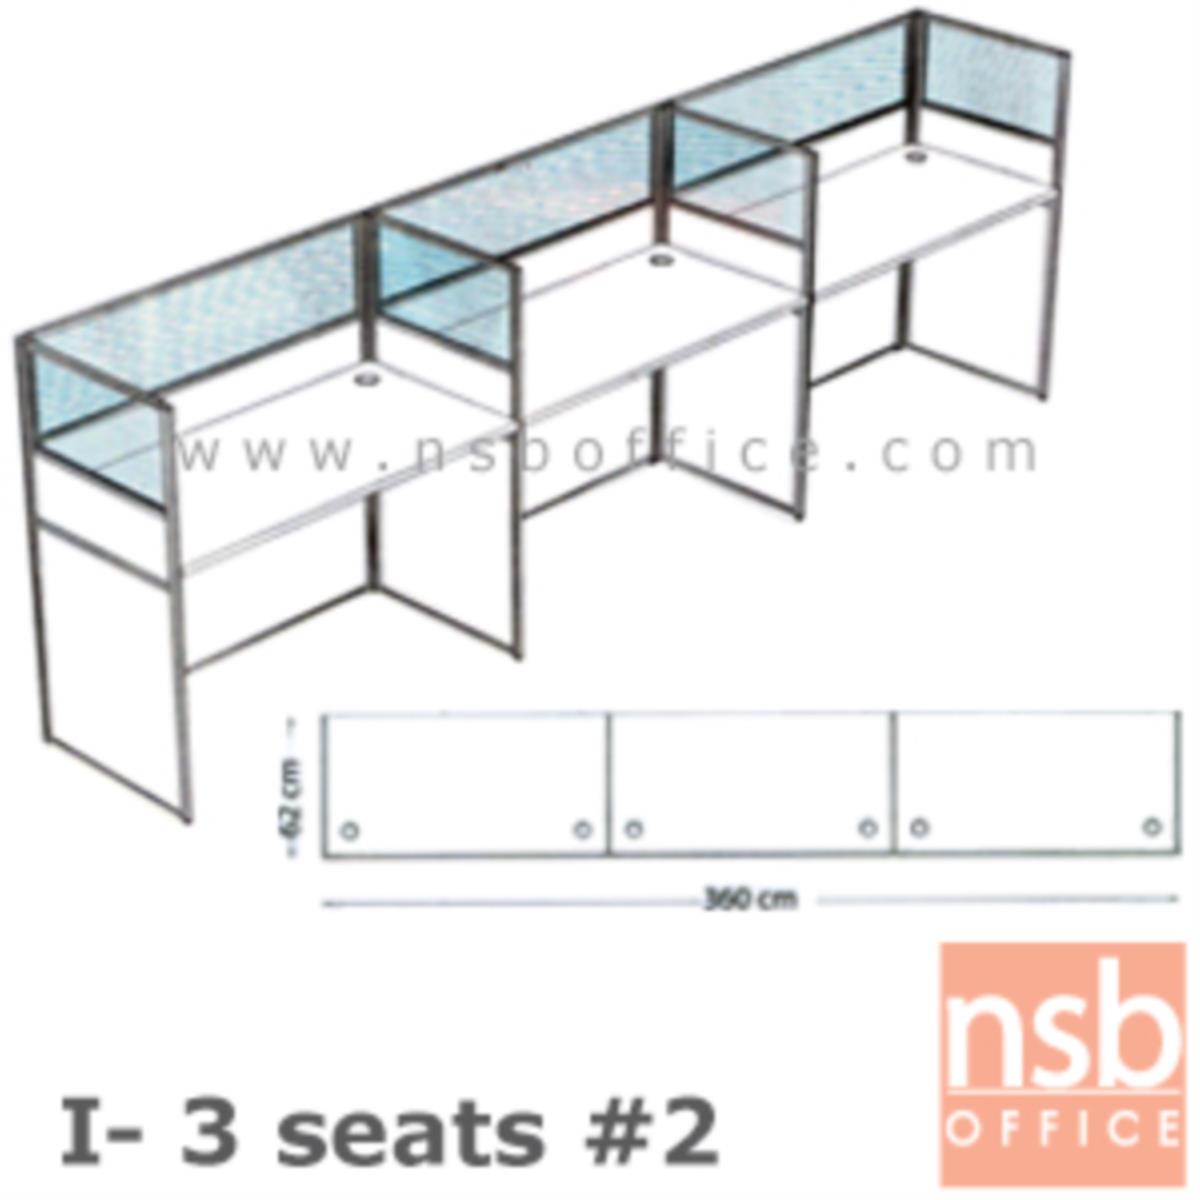 A04A083:ชุดโต๊ะทำงานกลุ่ม 3 ที่นั่ง   ขนาดรวม 360W*62D cm. พร้อมพาร์ทิชั่นครึ่งกระจกขัดลาย